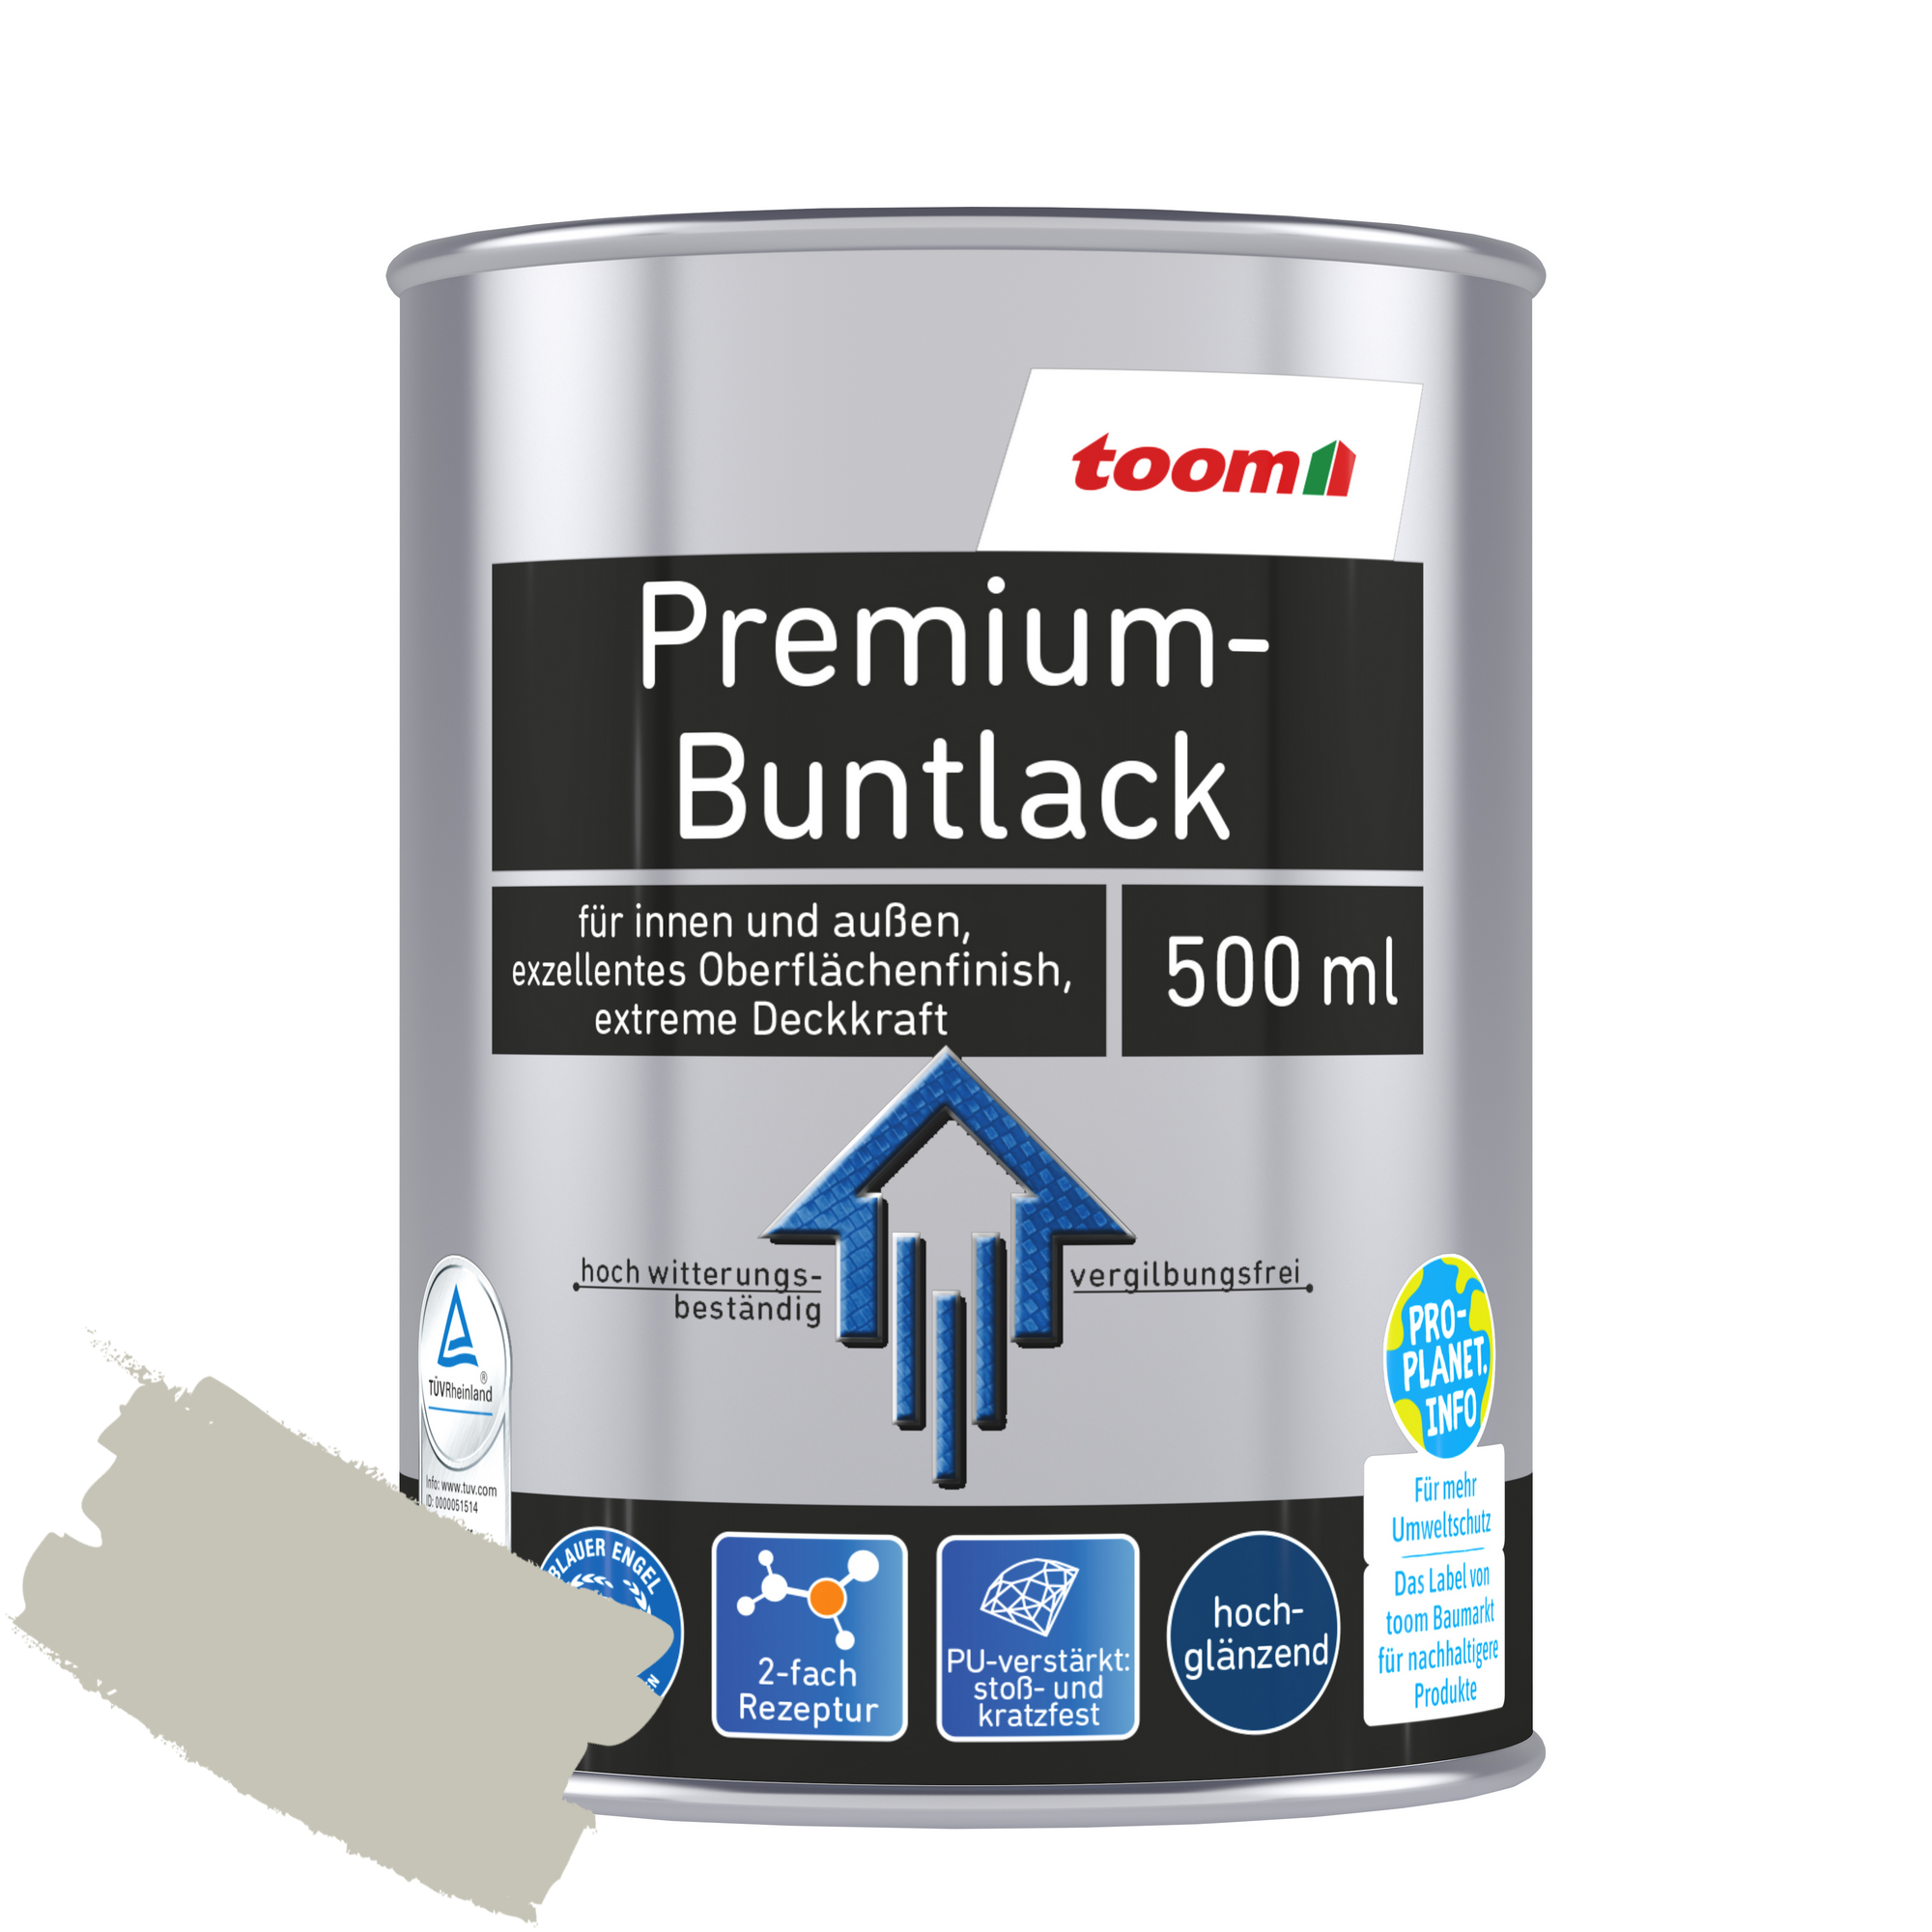 Premium-Buntlack taupe glänzend 500 ml + product picture